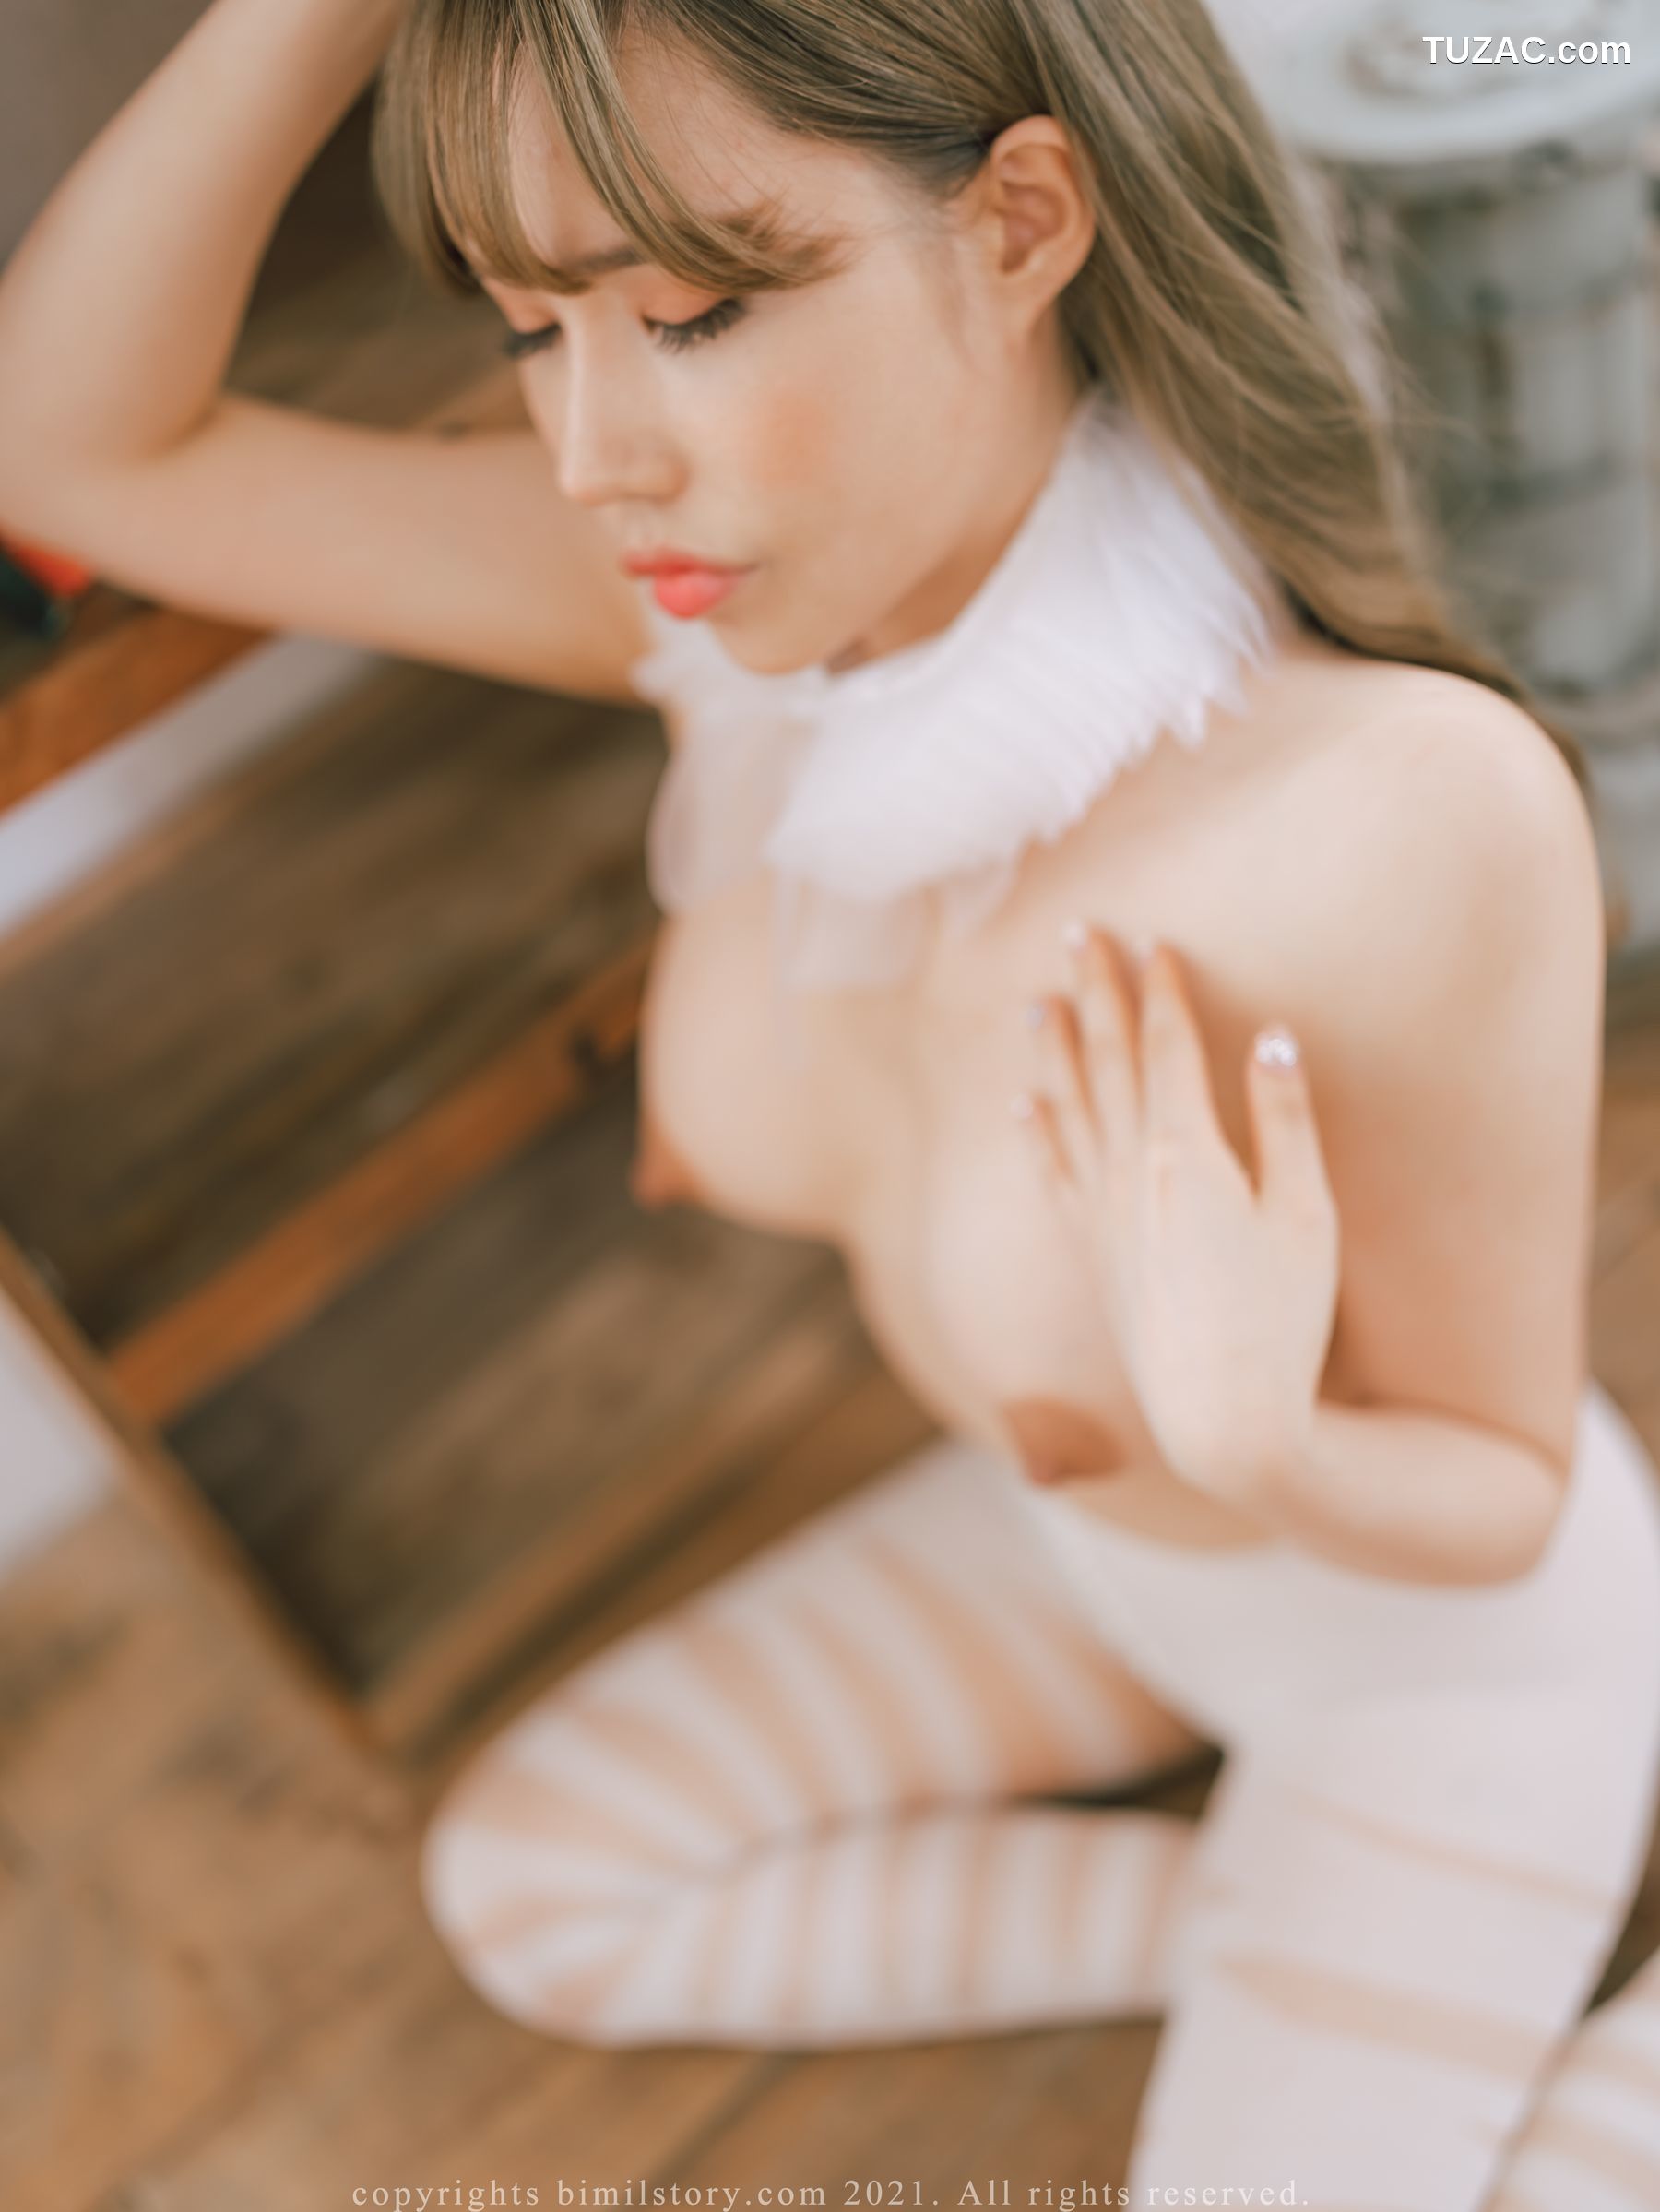 韩国美女-银河-Eunha-은하-感伤的Eunha-卷2-Sentimental-Eunha-Bimilstory-Vol.05